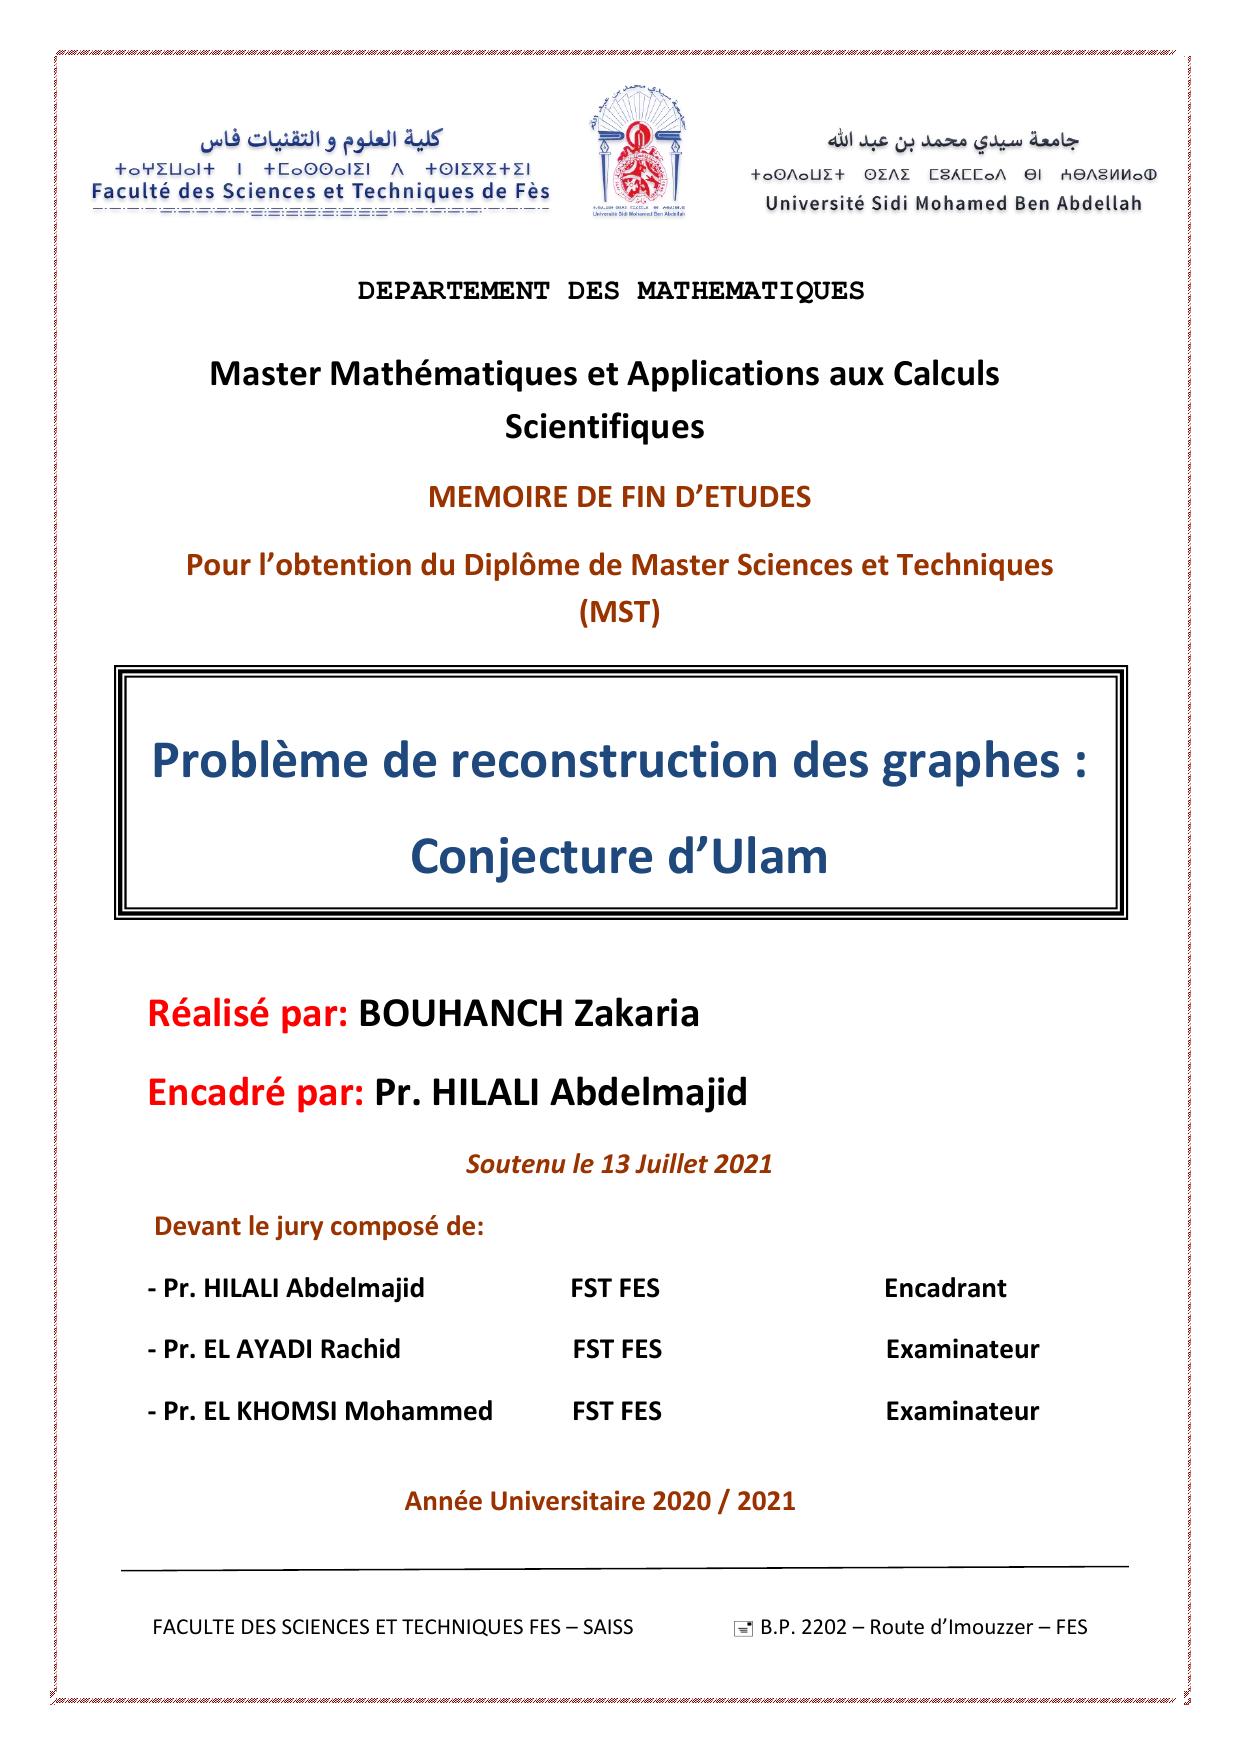 Problème de reconstruction des graphes : Conjecture d’Ulam